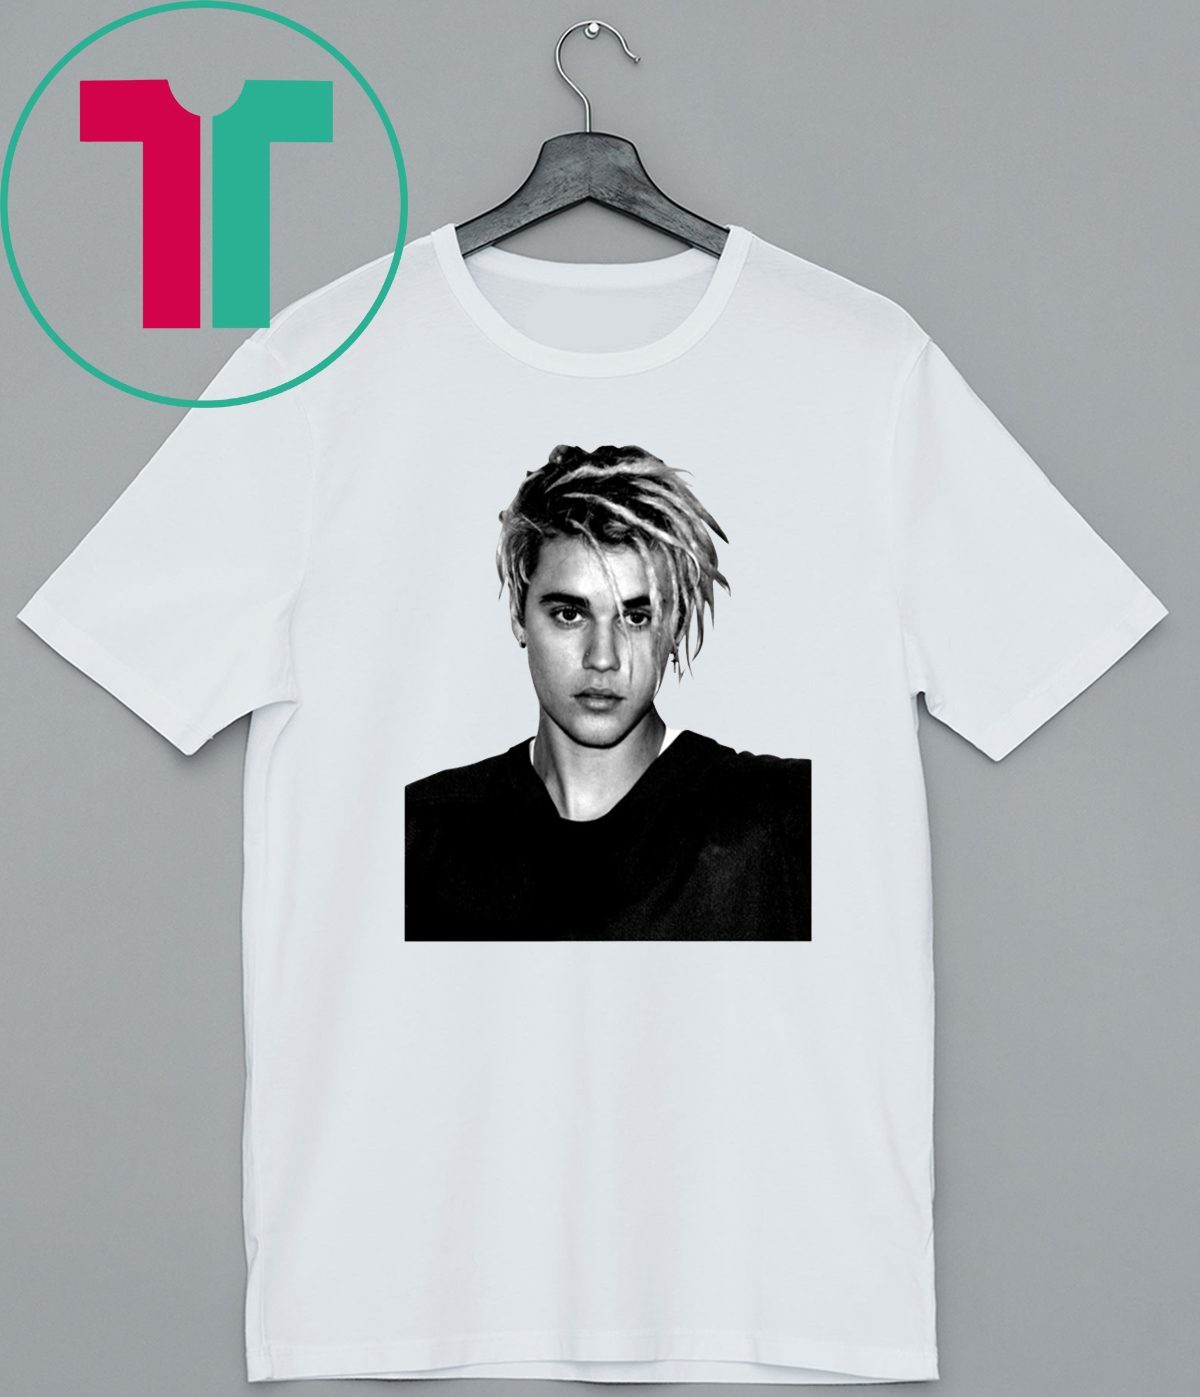 Official Nick Starkel Justin Bieber Shirt - Reviewshirts Office